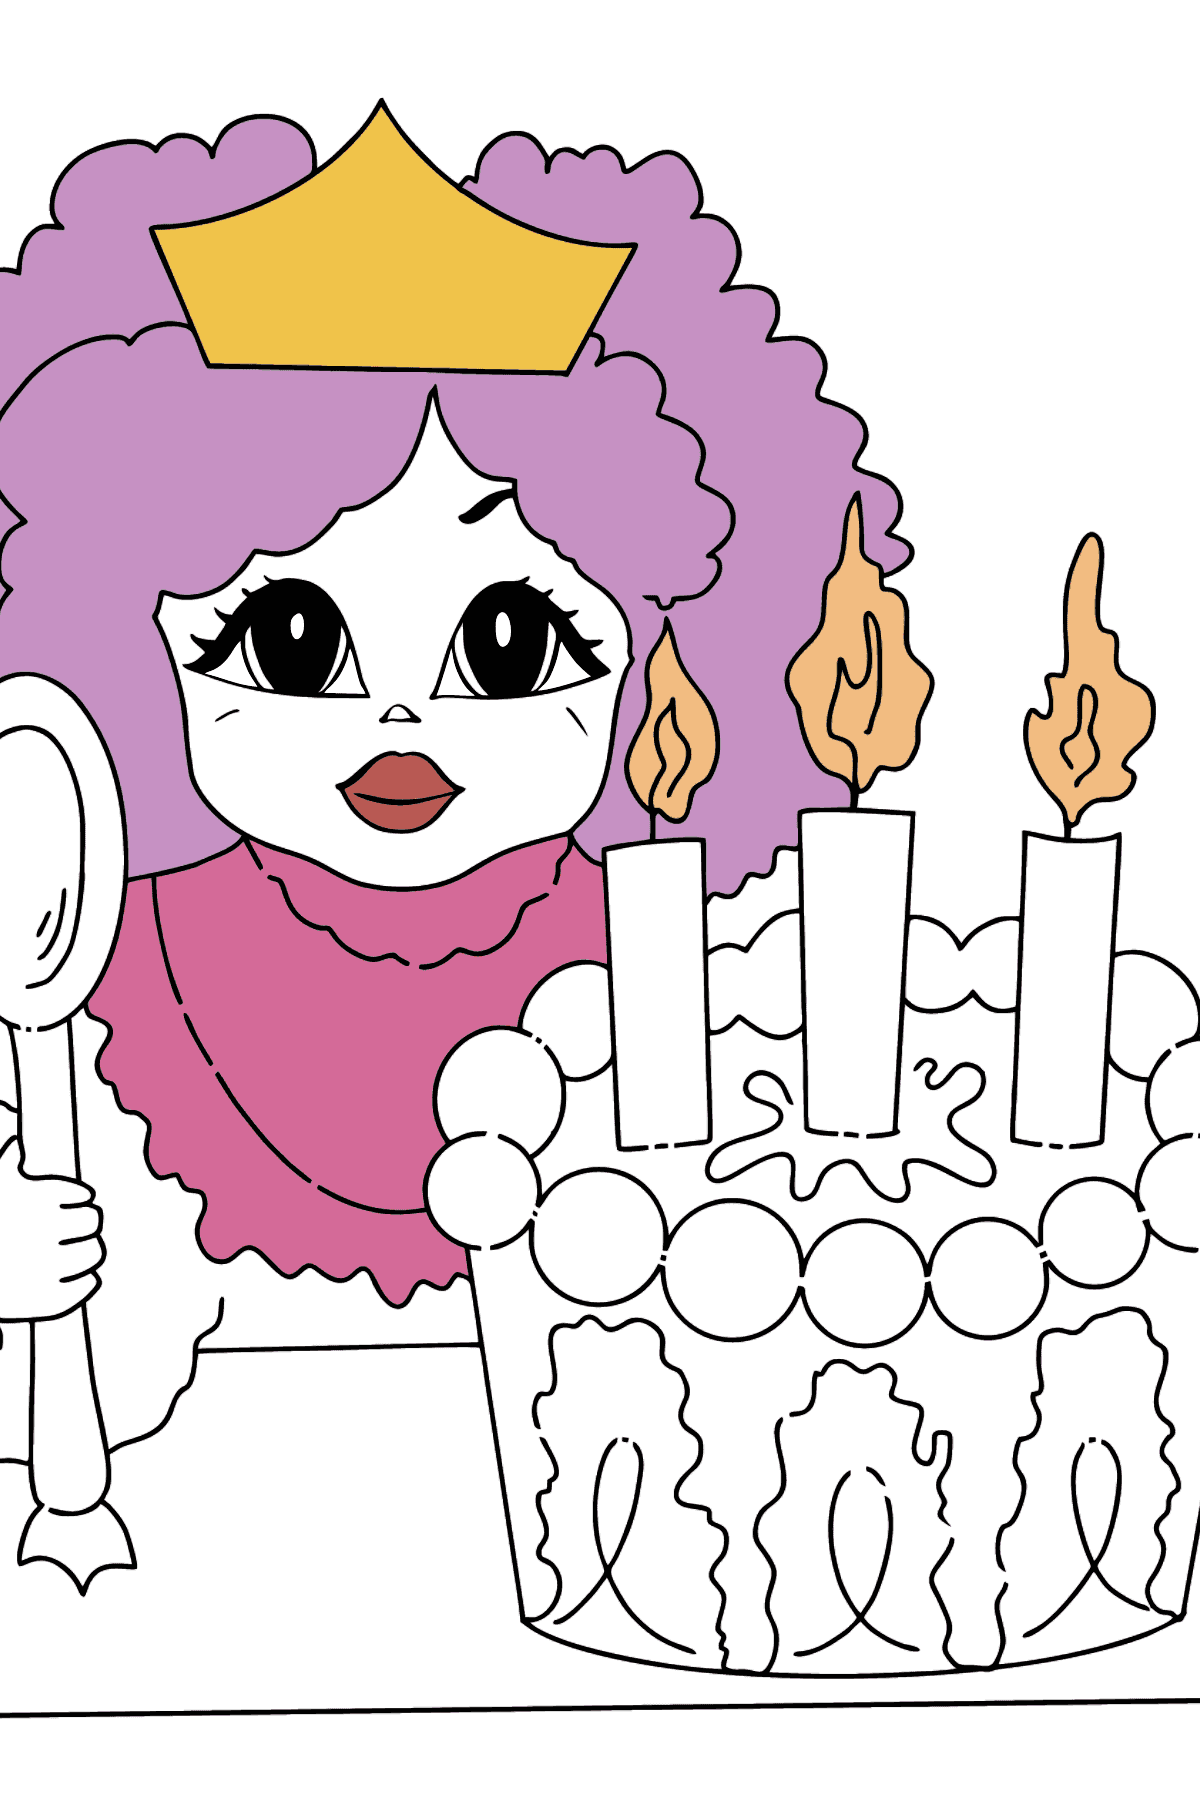 Principessa da colorare semplice e divertente - Disegni da colorare per bambini